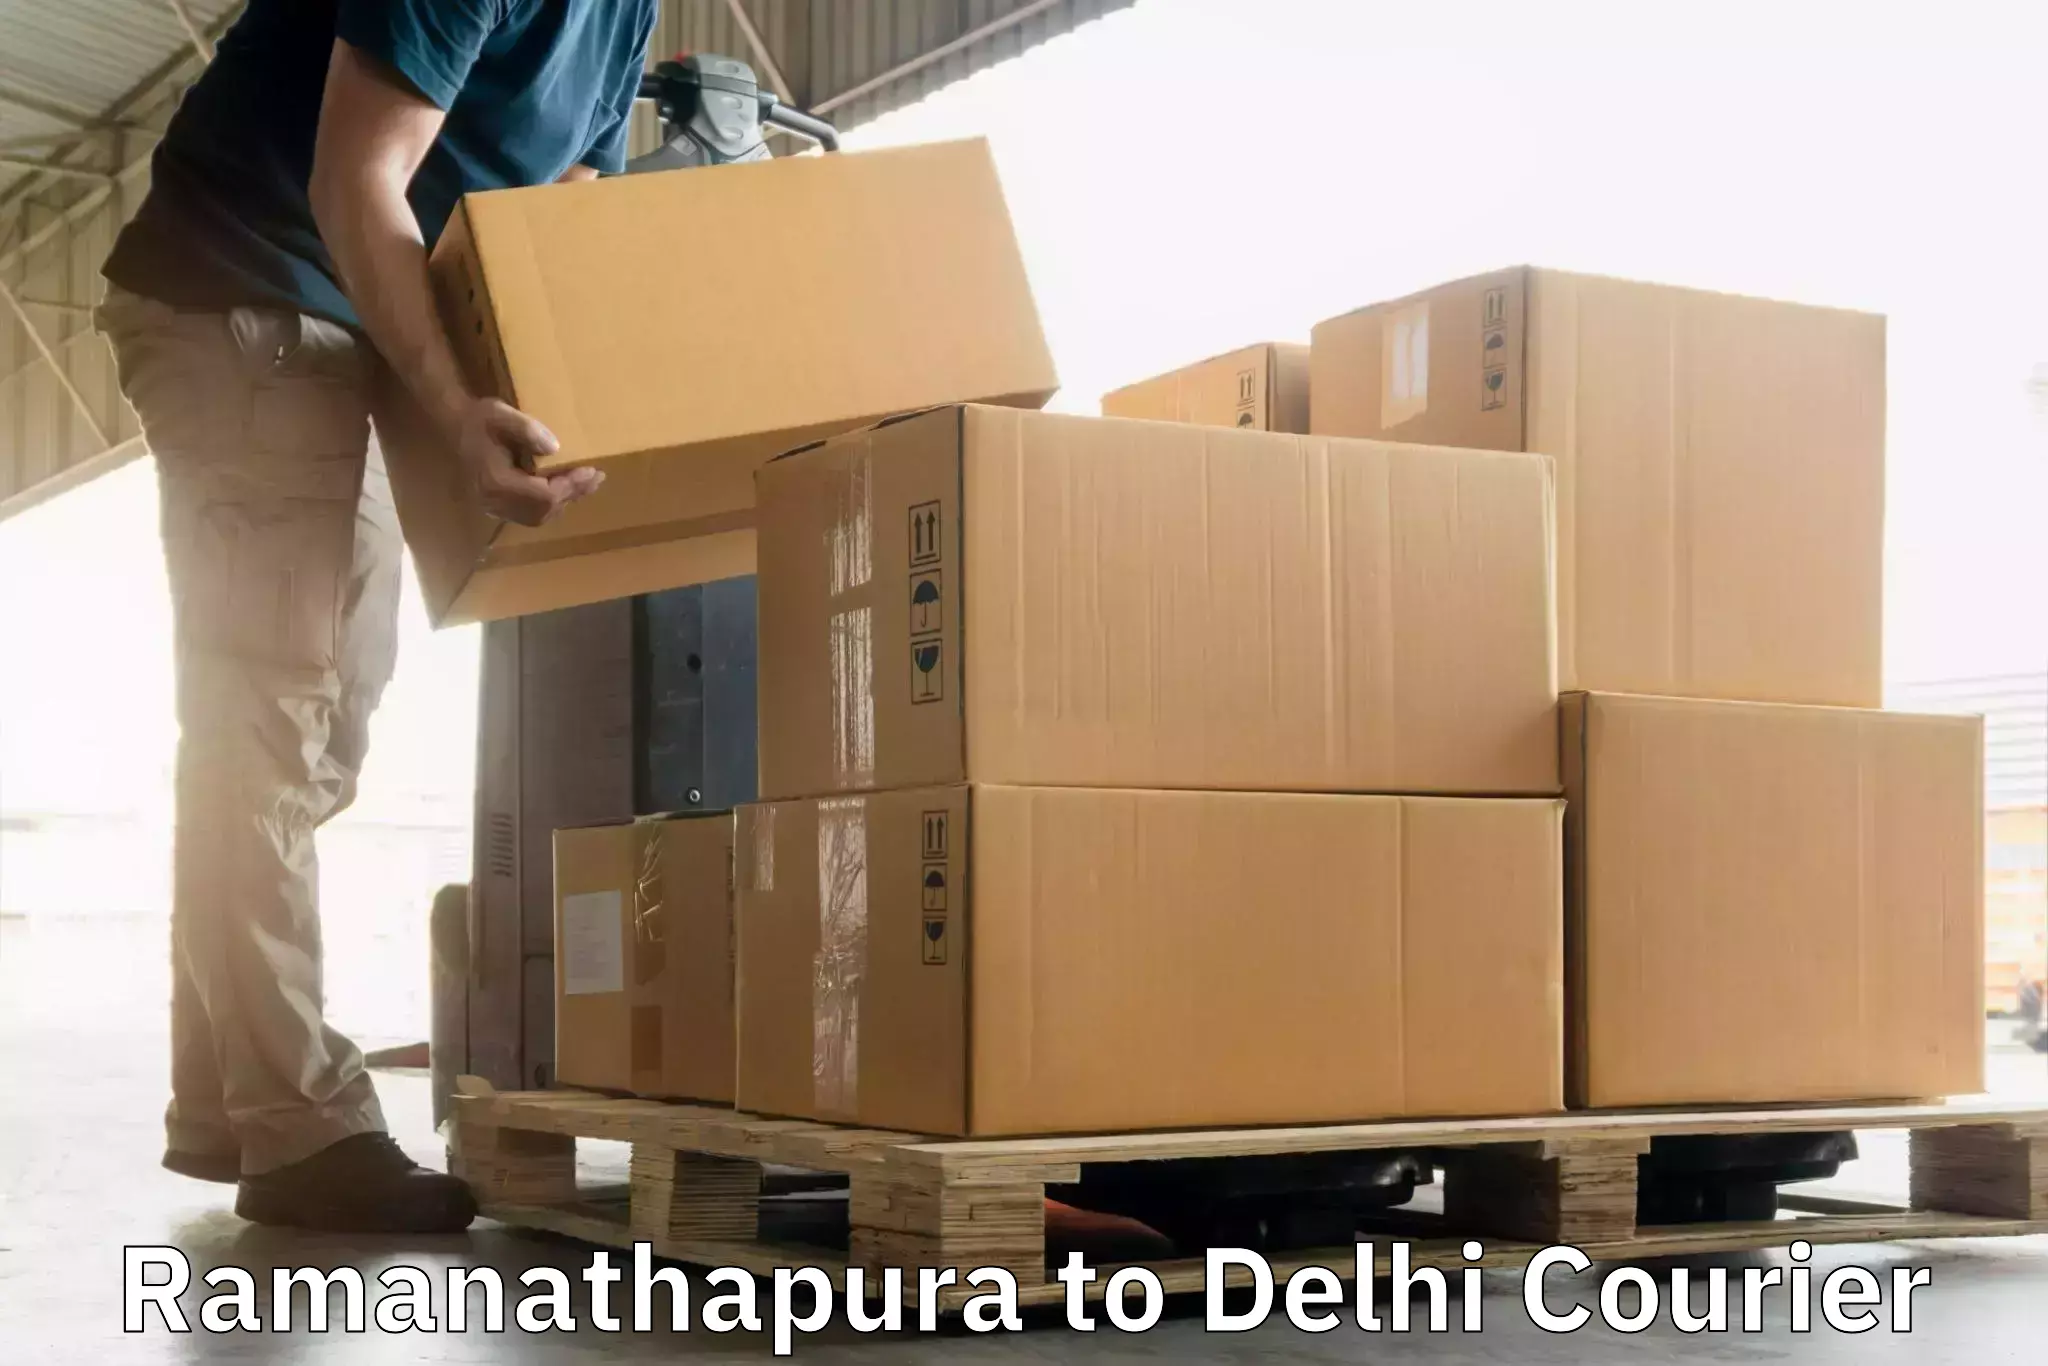 Express delivery capabilities Ramanathapura to Kalkaji